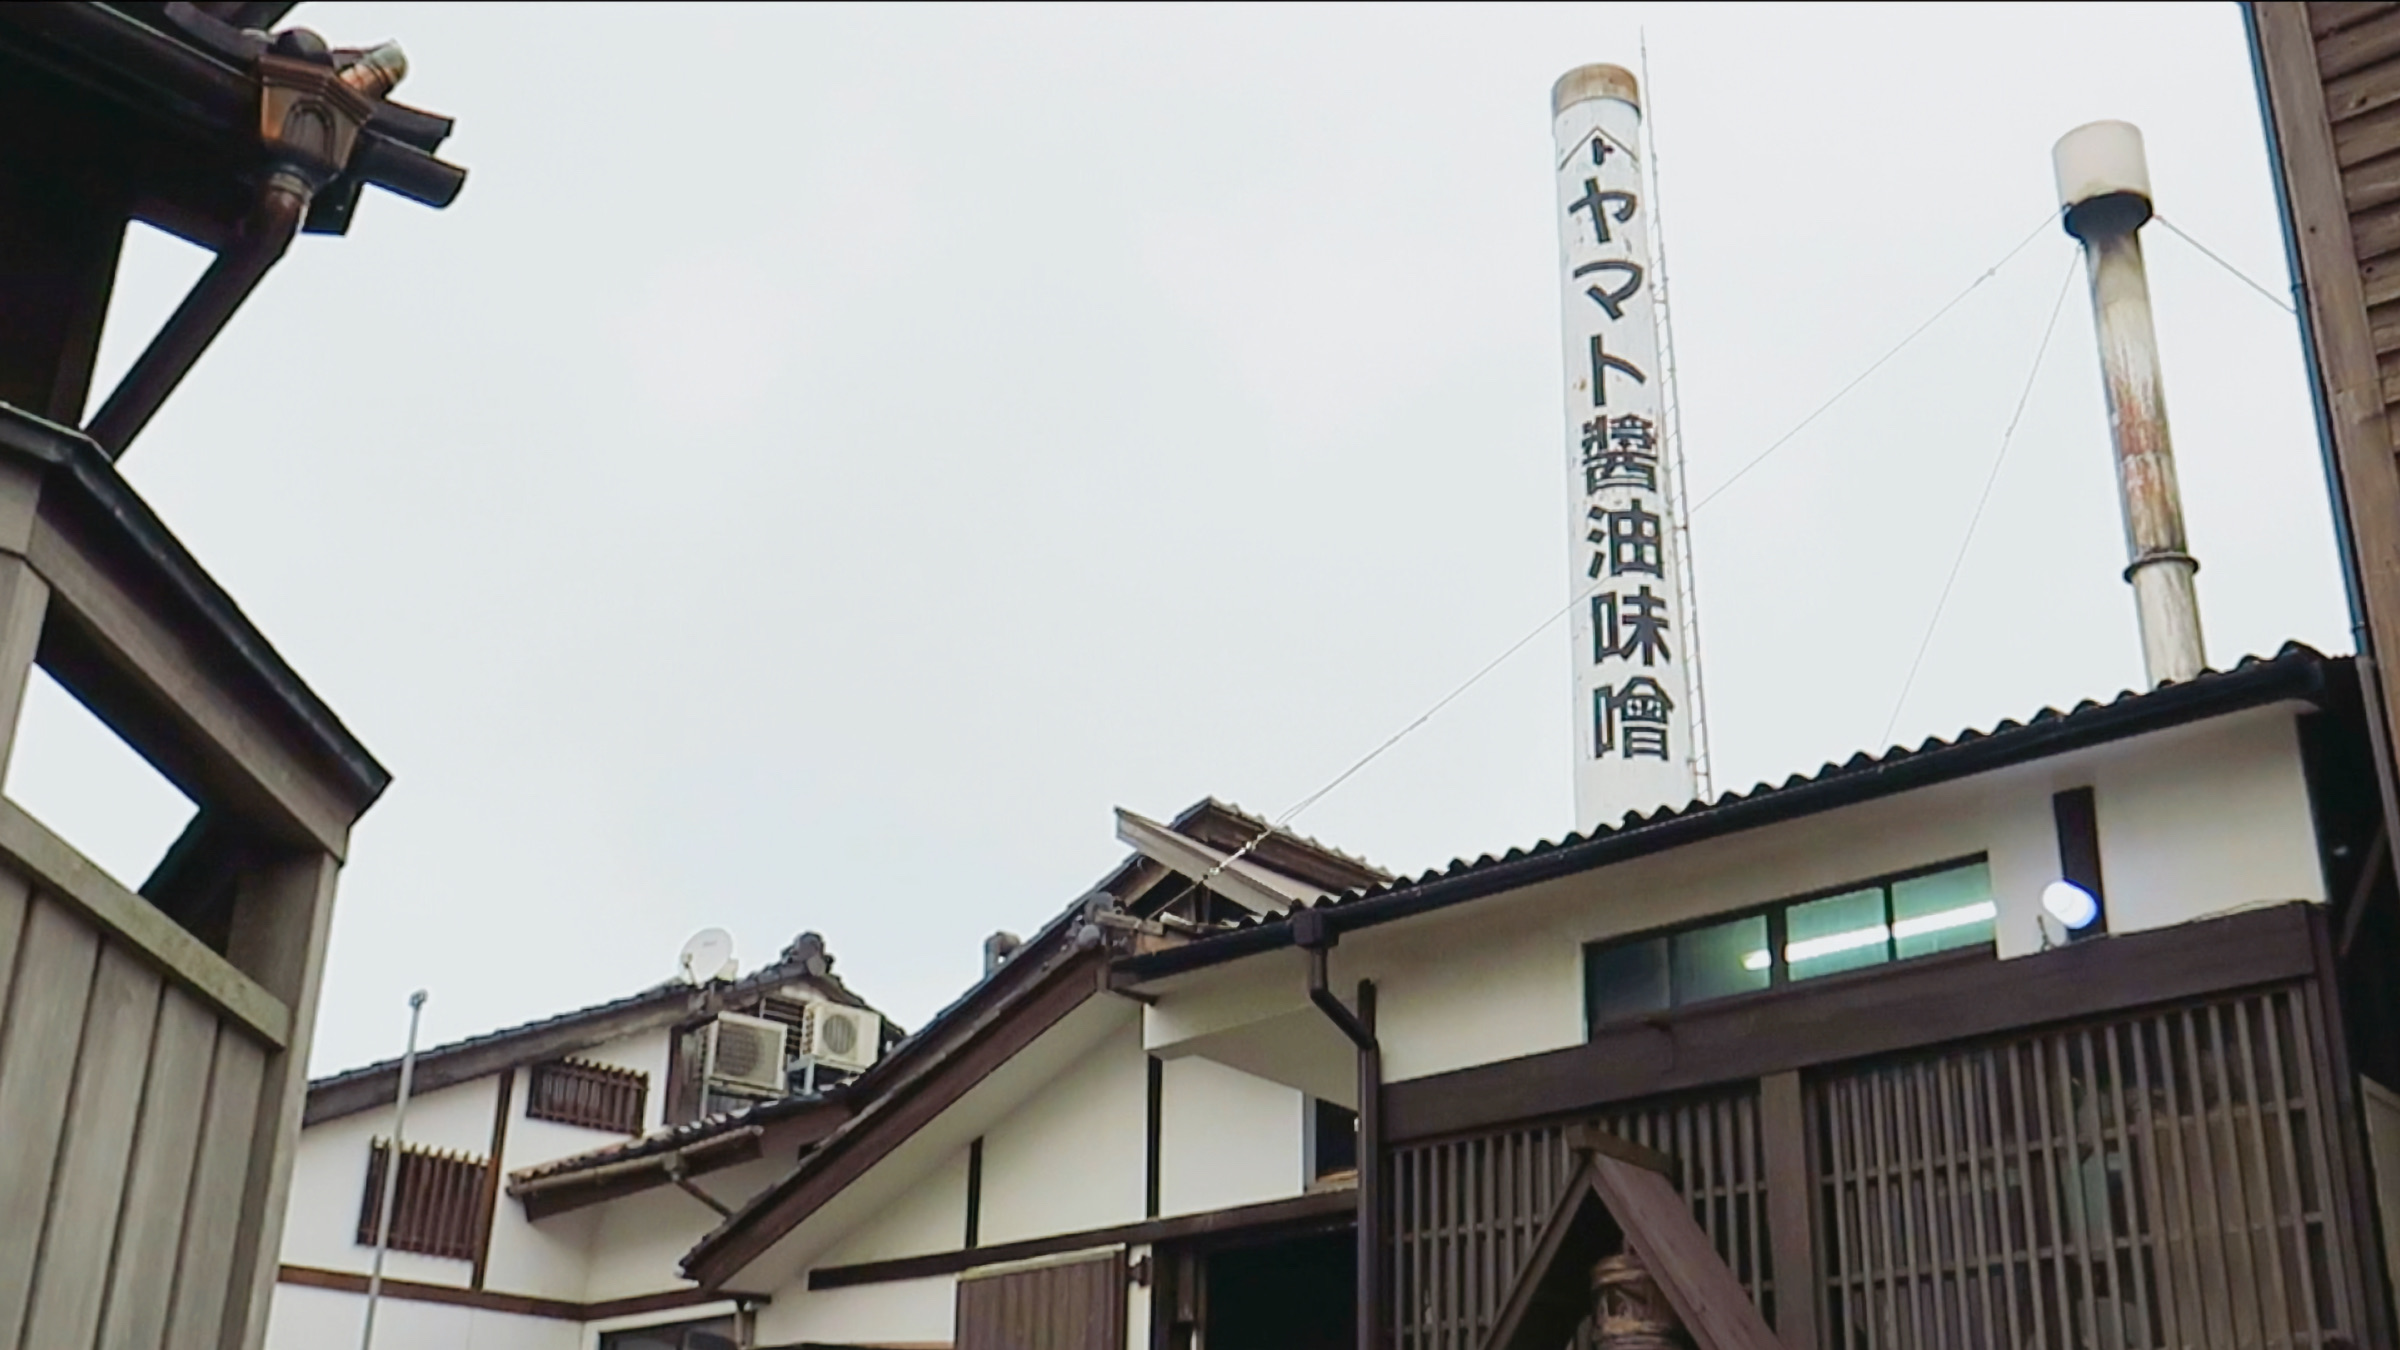 Die Sojasaucen- und Miso-Fabrik Yamato im Hafenviertel von Kanazawa.